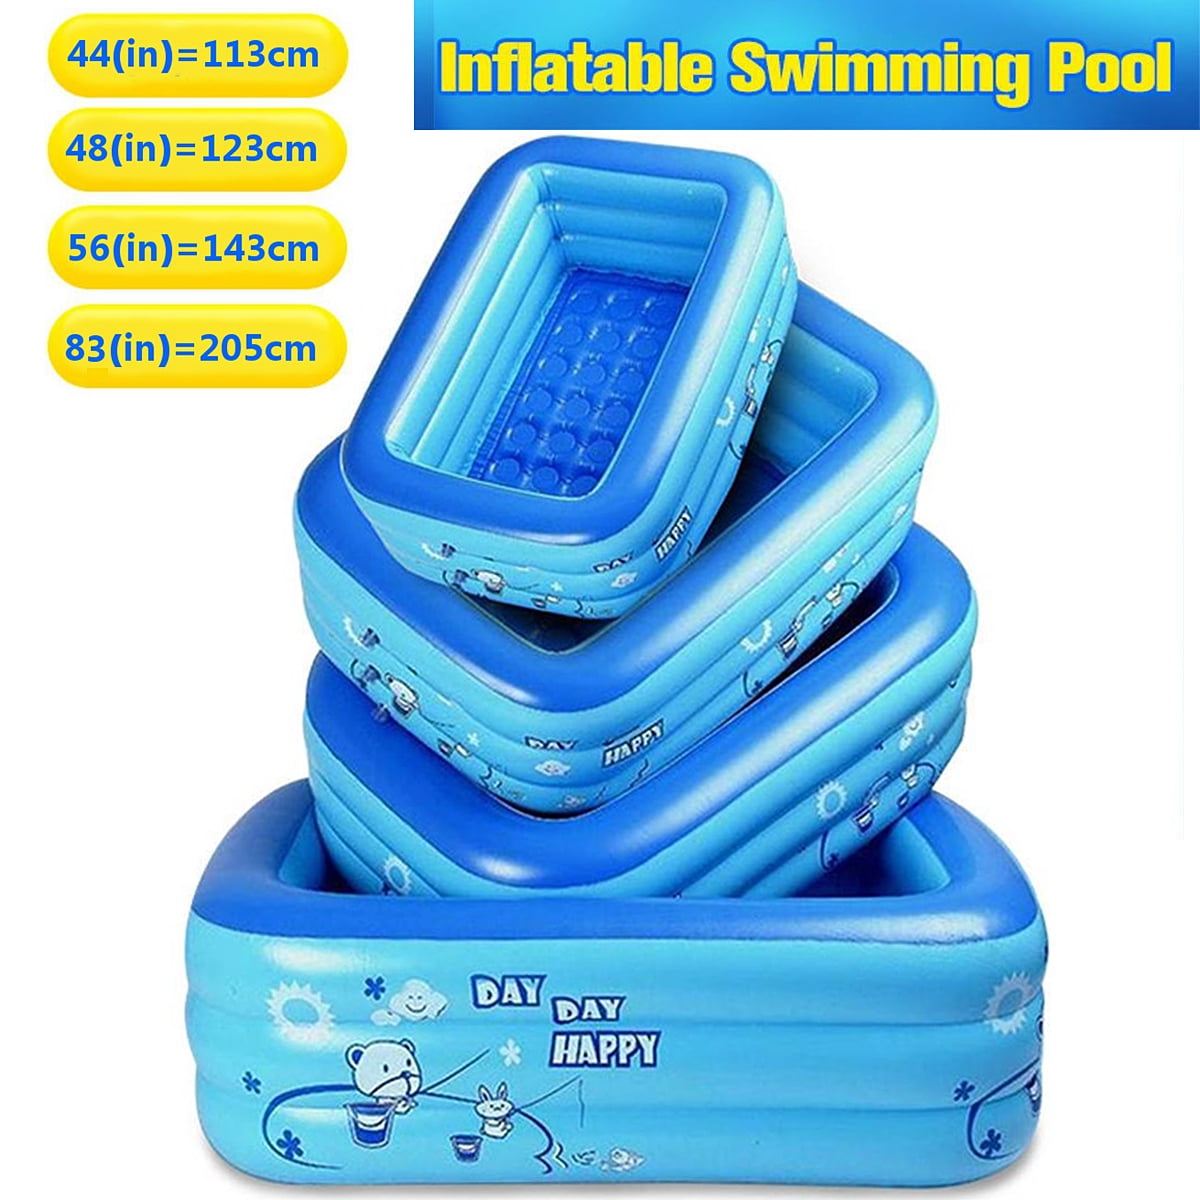 180cm Inflatable Warm Bathtub Adult PVC Portable Winter Home Spa Bath Tub Pool 